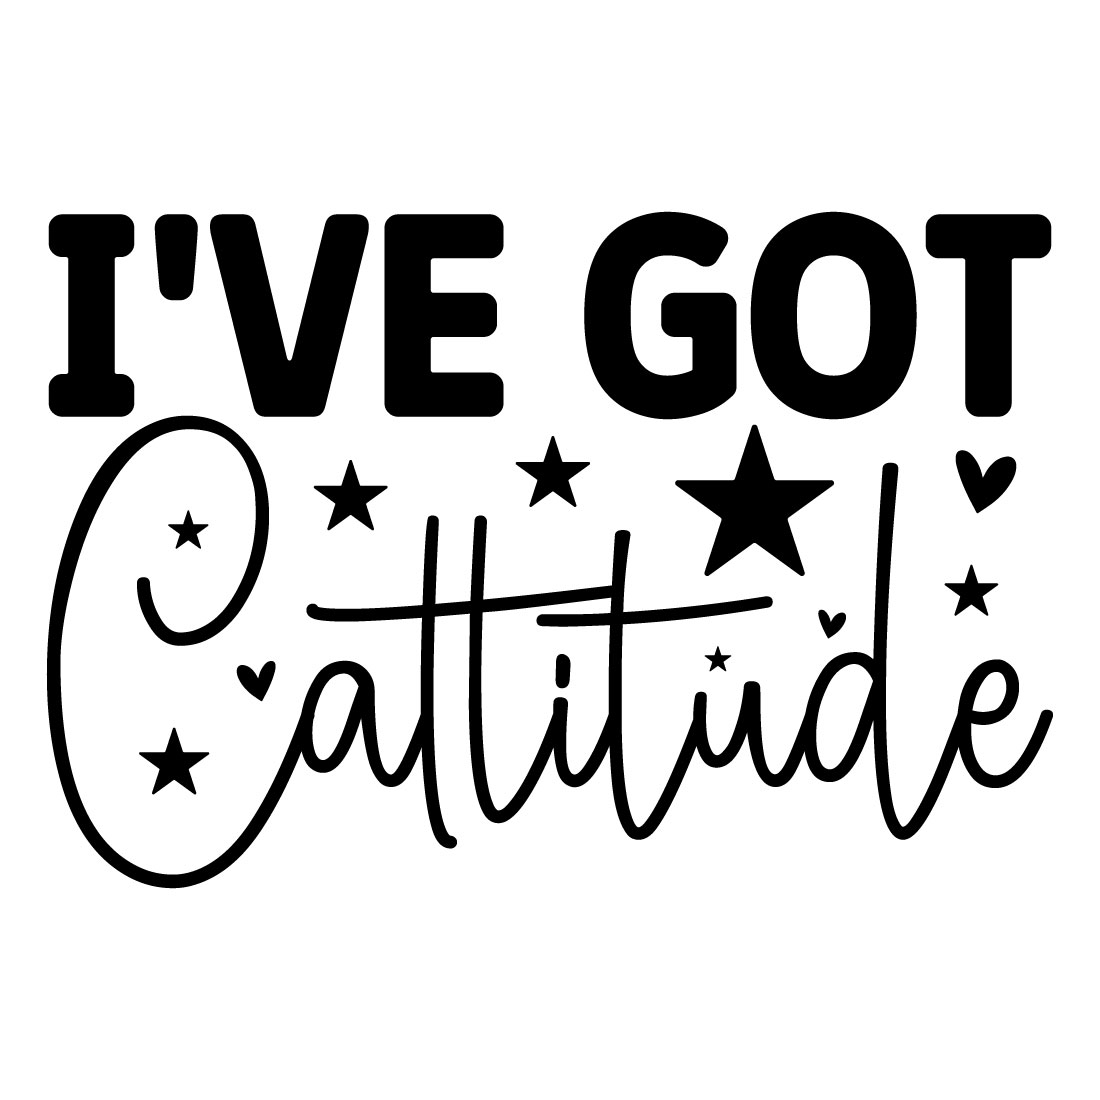 I've Got Cattitude main cover.